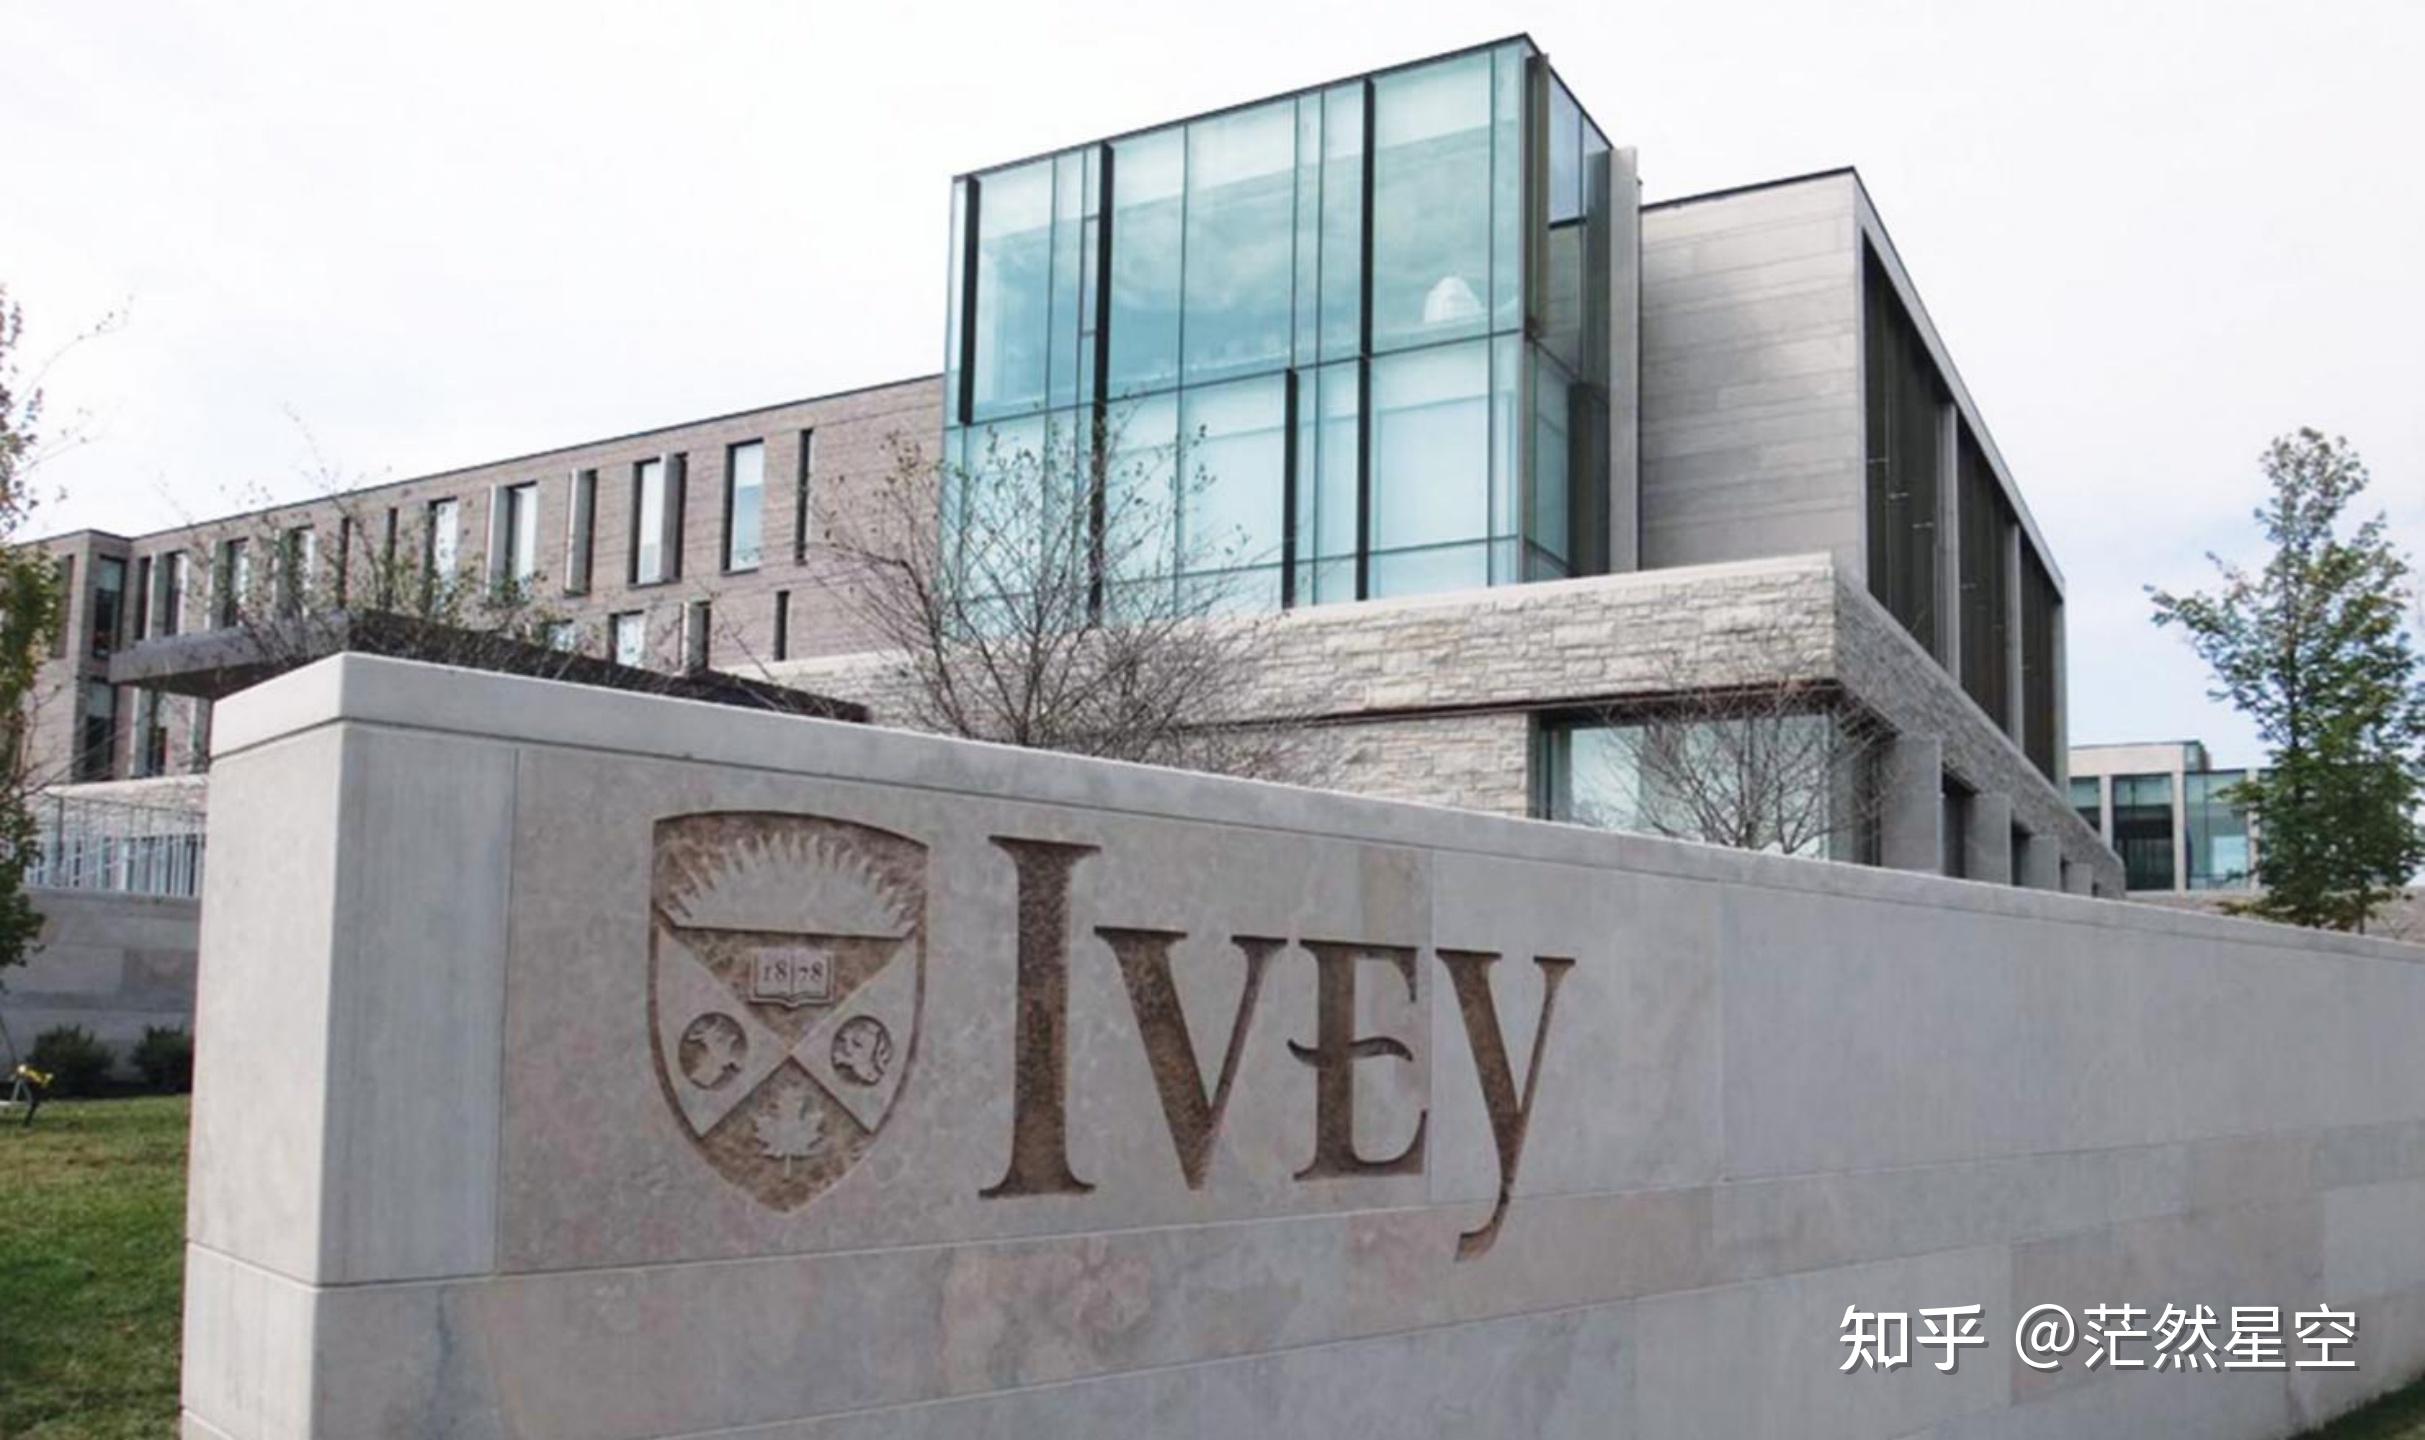 西安大略大学ivey图片